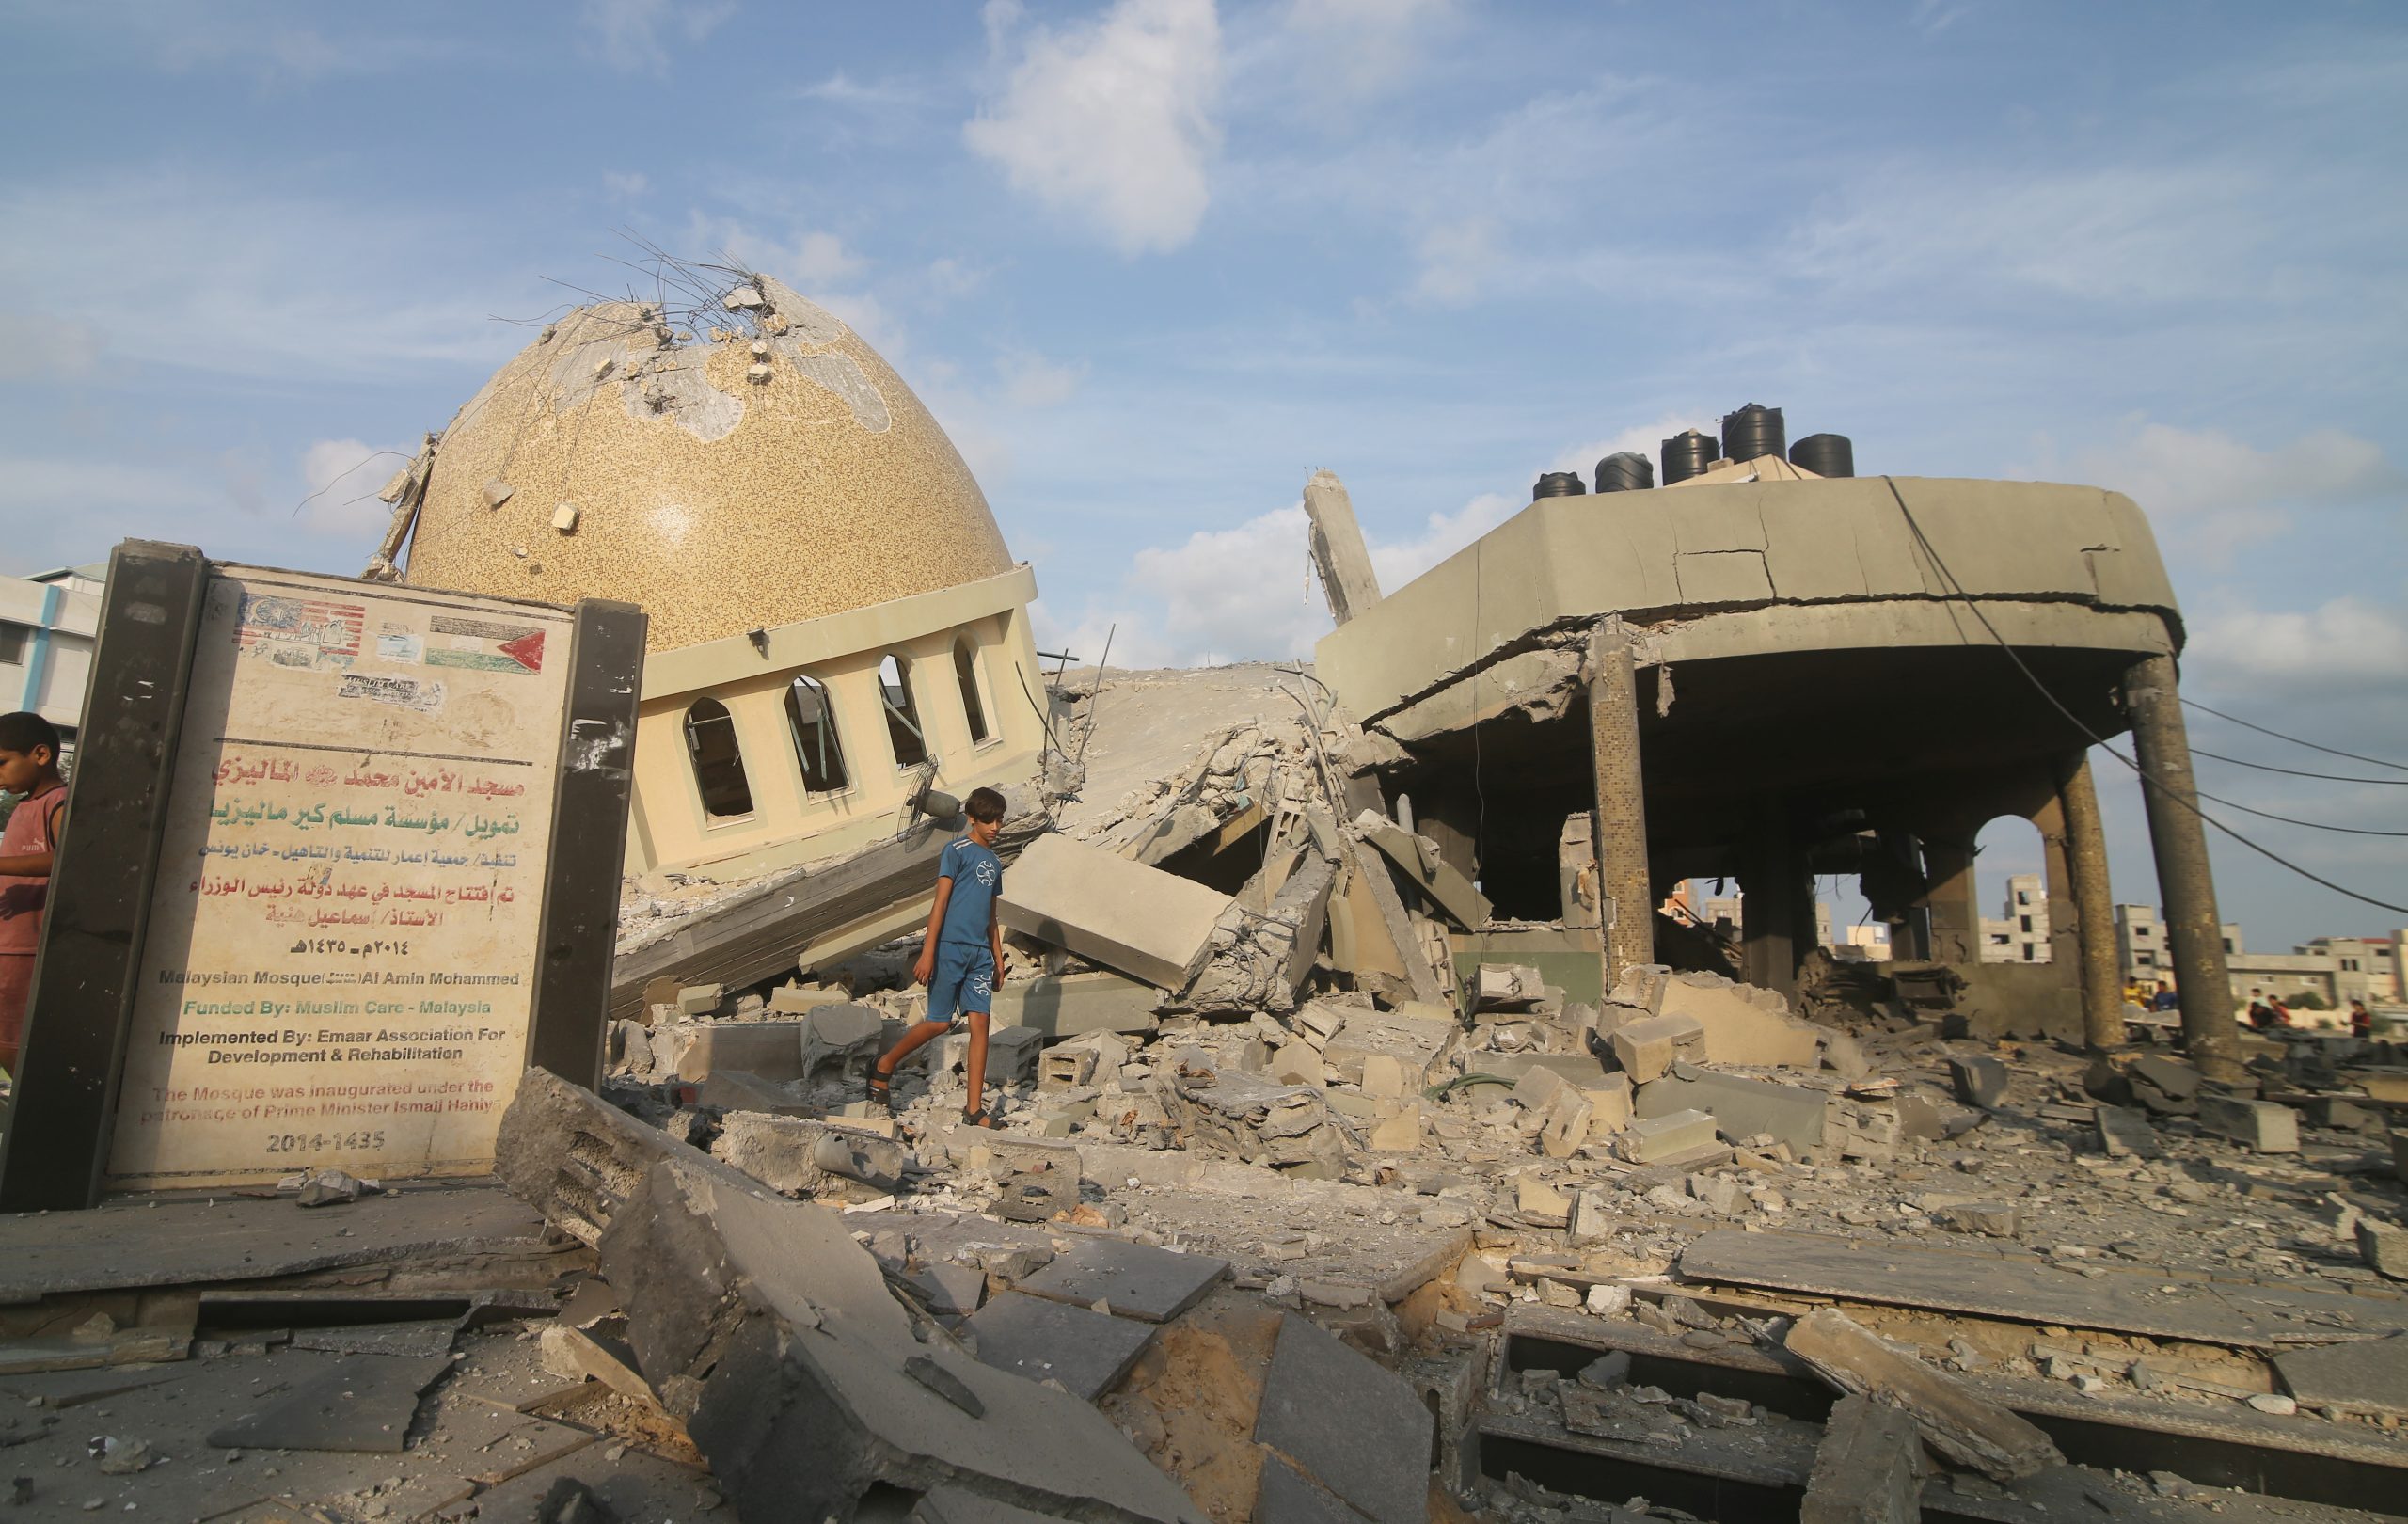 تقرير أوّليّ عن المساجد التي دمرها الاحتلال أثناء (طوفان الأقصى) وقائمة أوّليّة بأسمائها